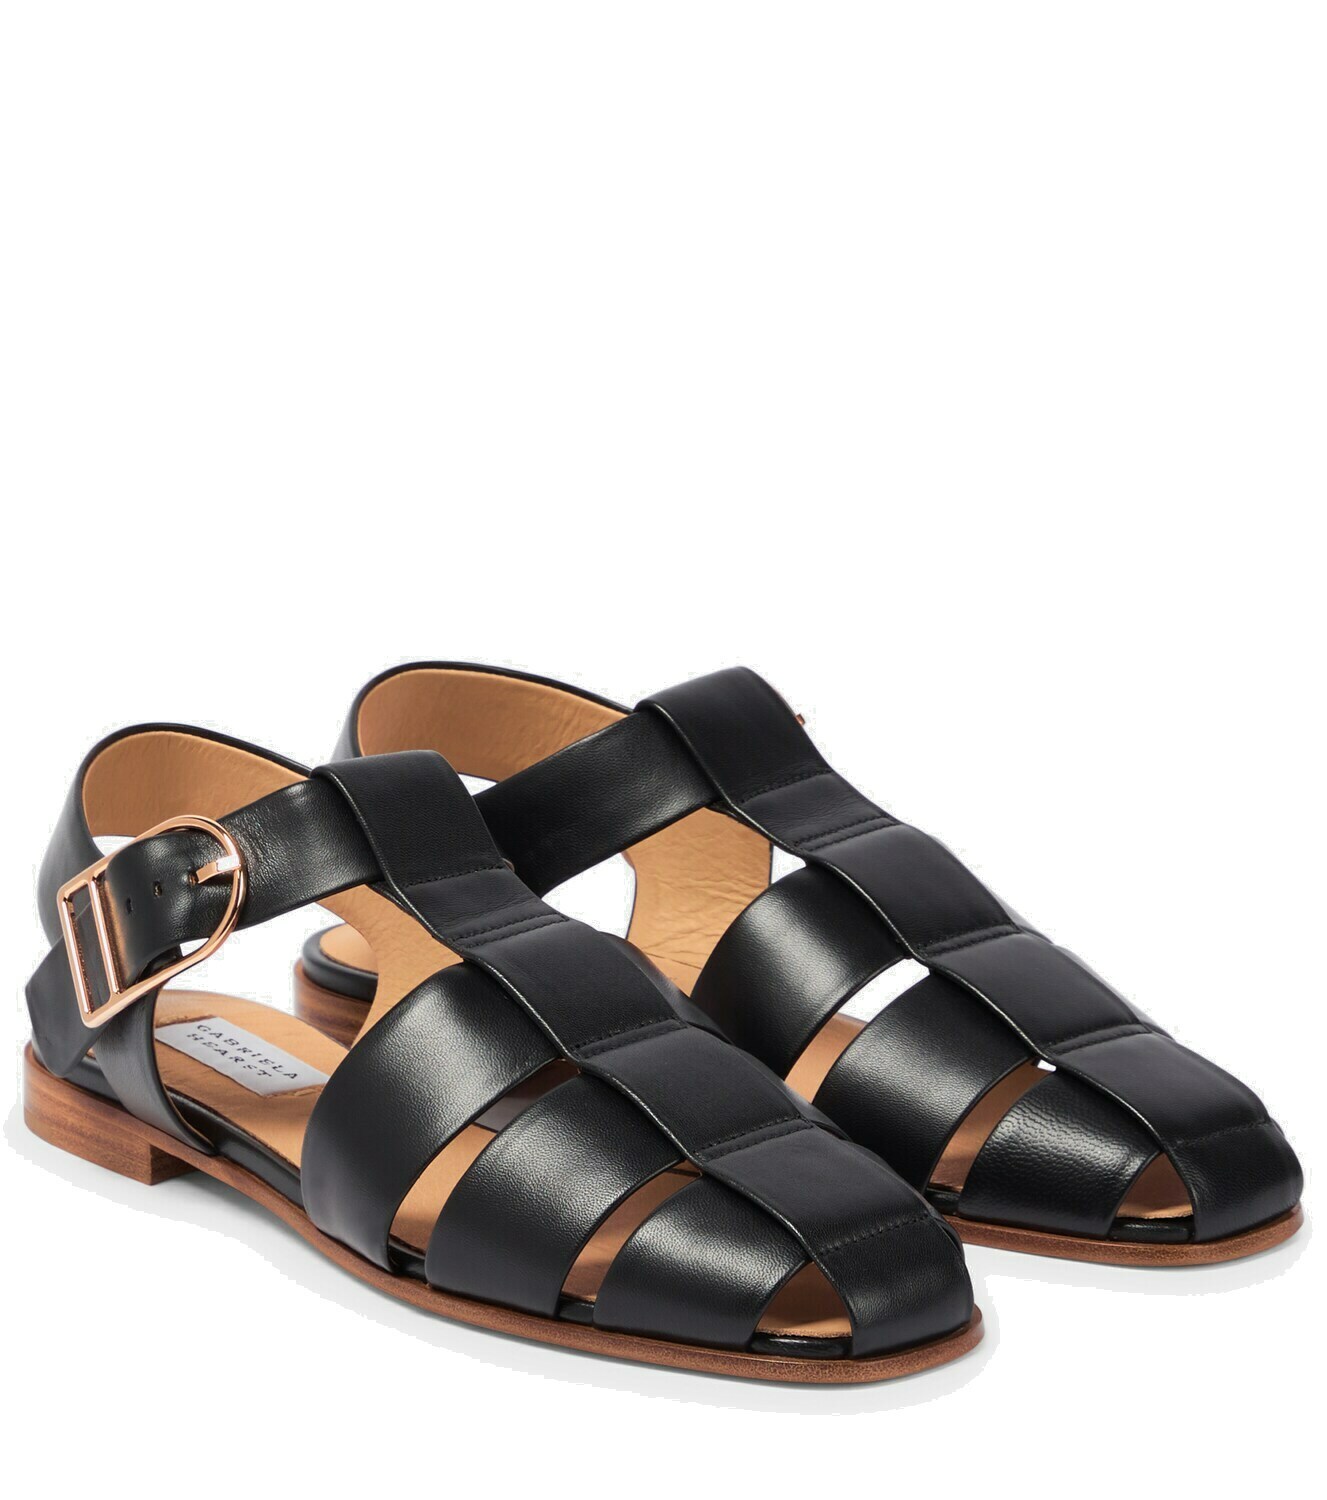 Gabriela Hearst - Lynn leather sandals Gabriela Hearst